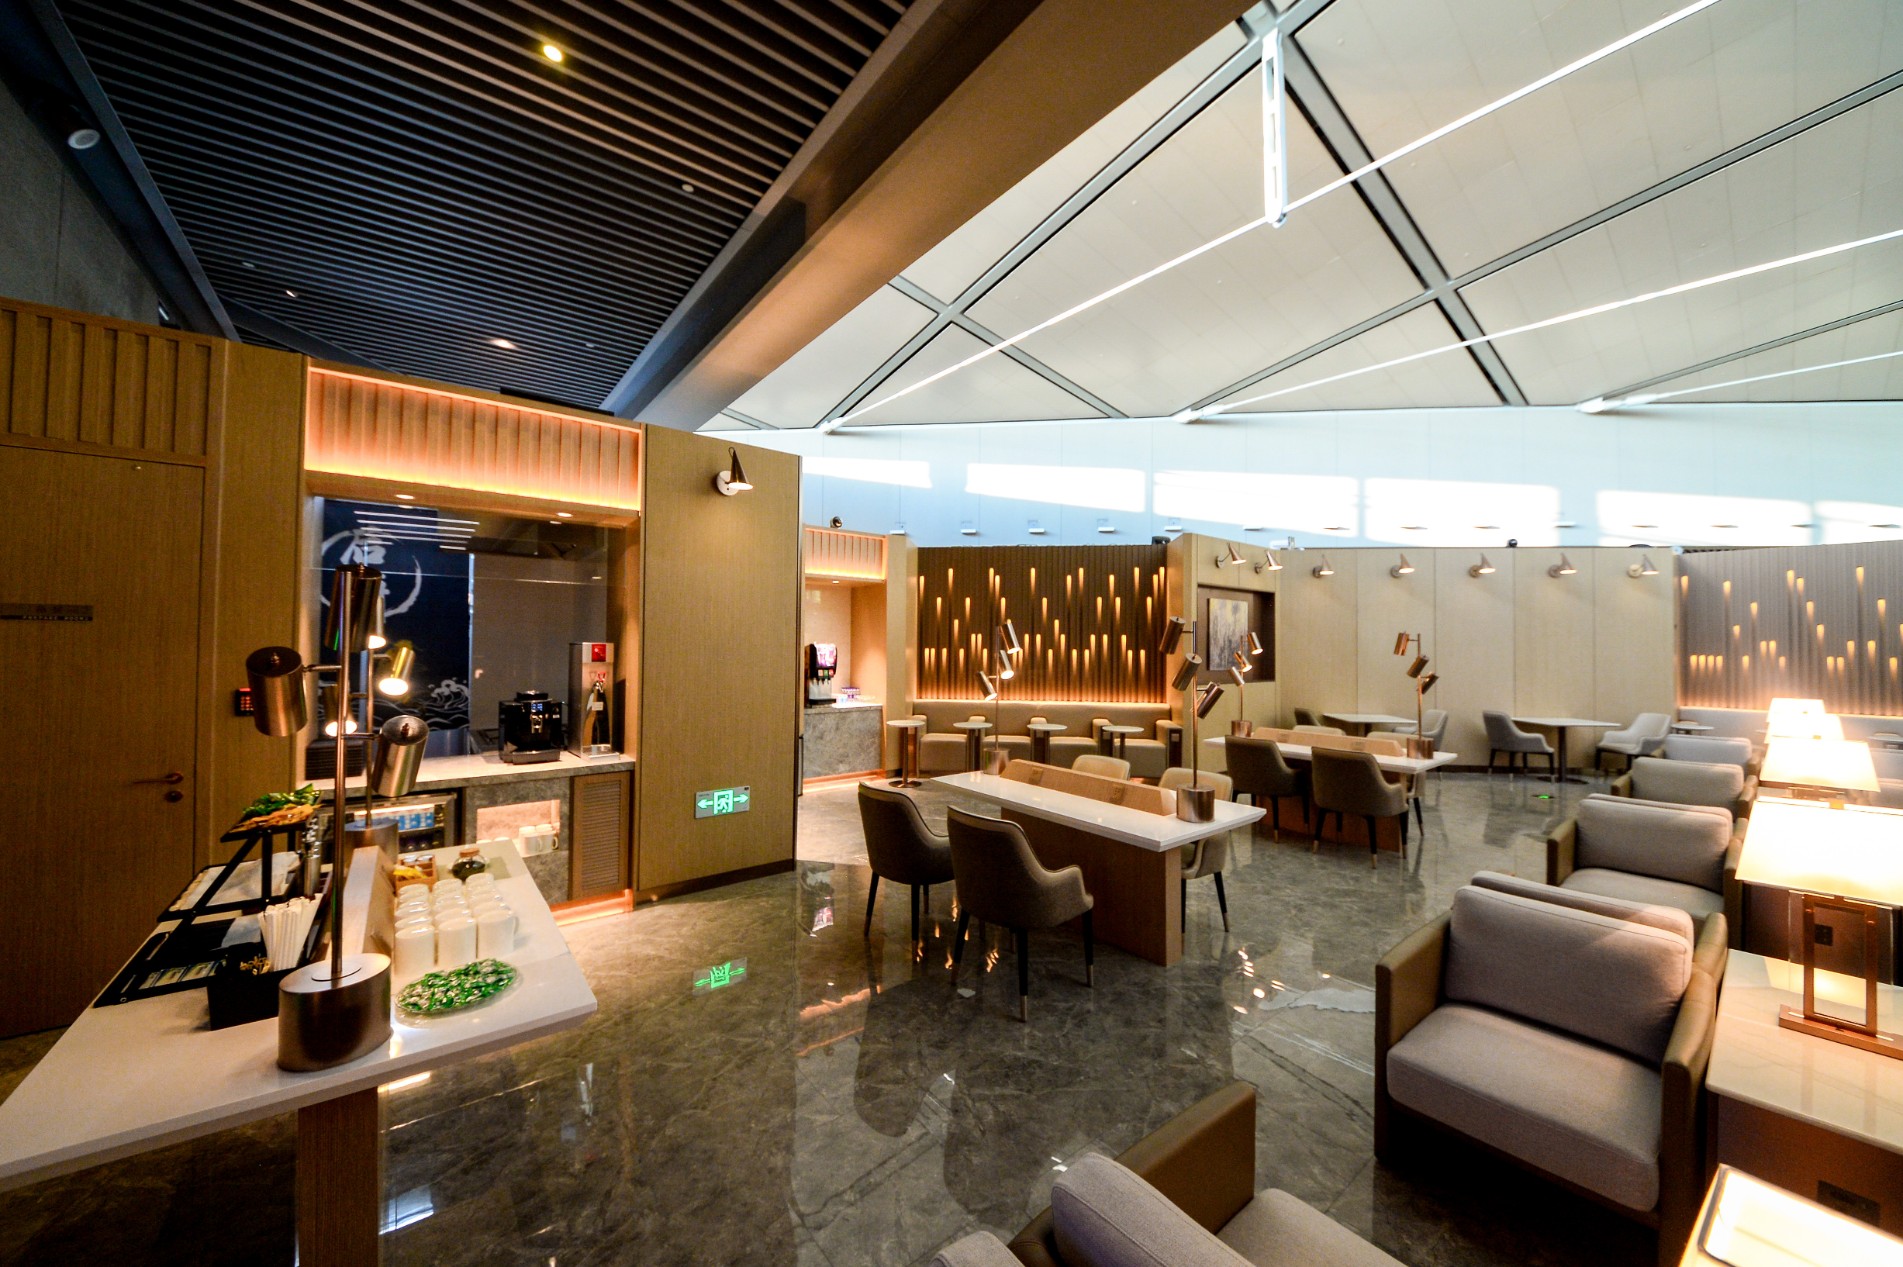 肯尼迪机场高级VIP休息室设计 – 设计本装修效果图